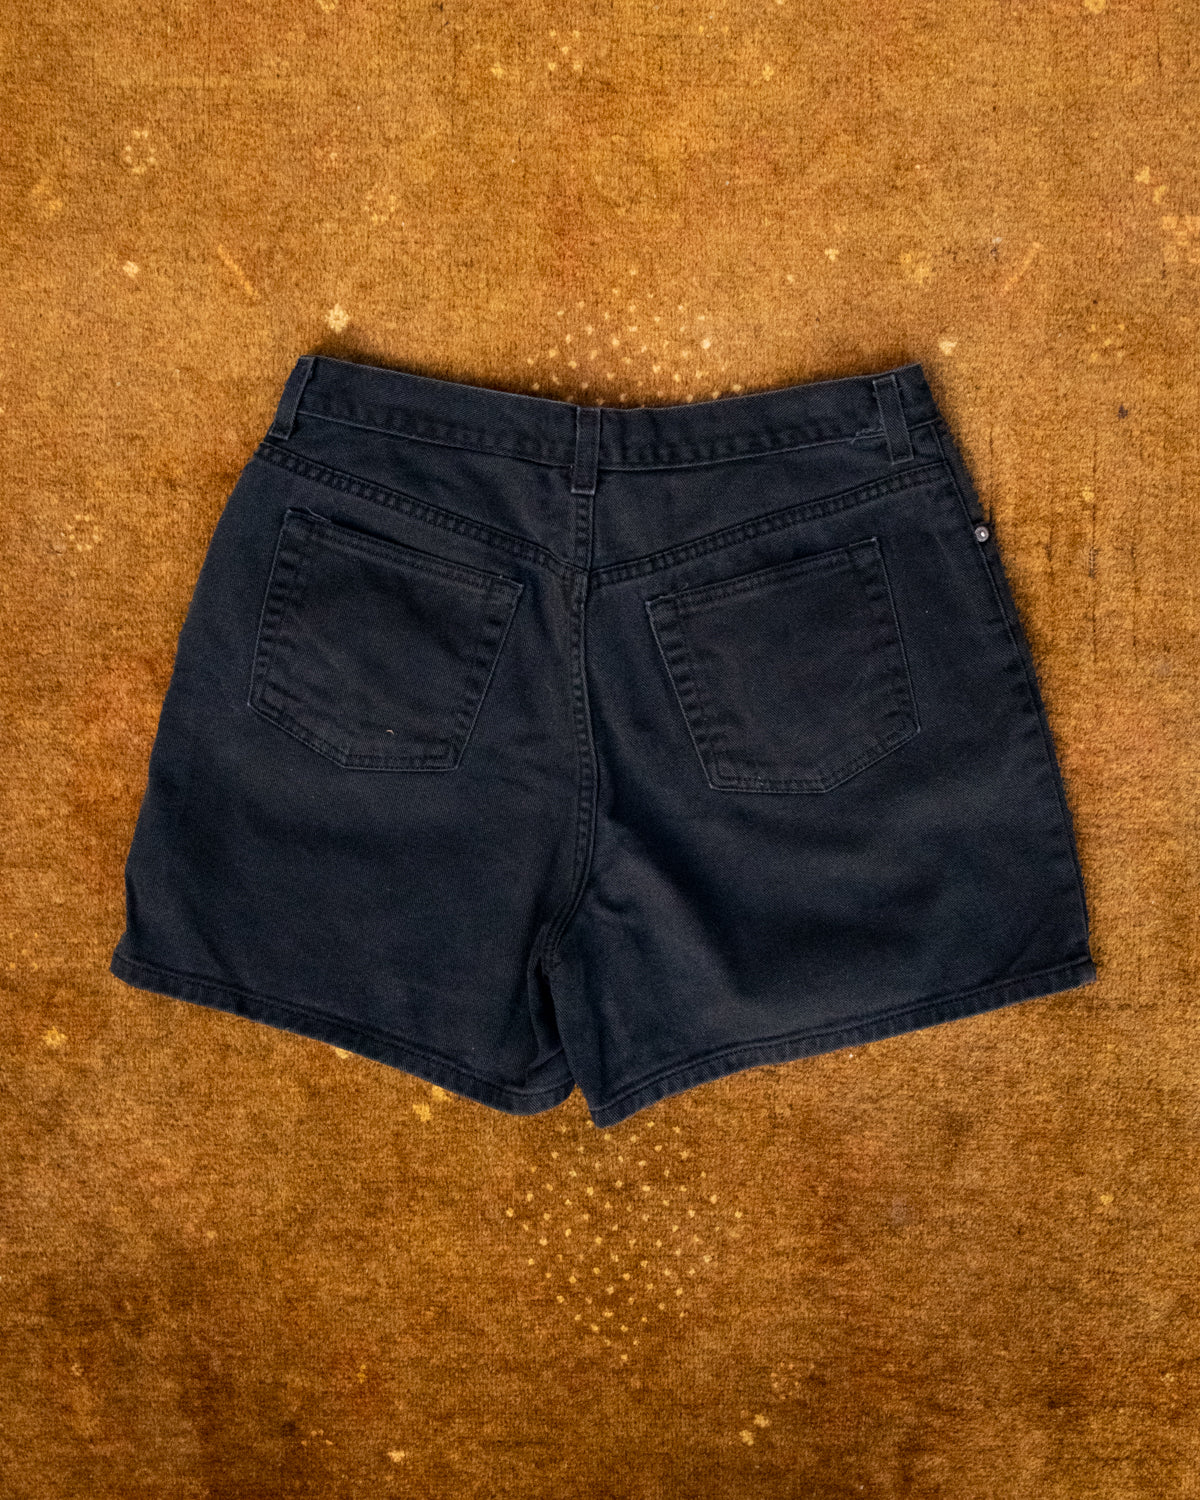 90s NY Jeans Black Denim Shorts